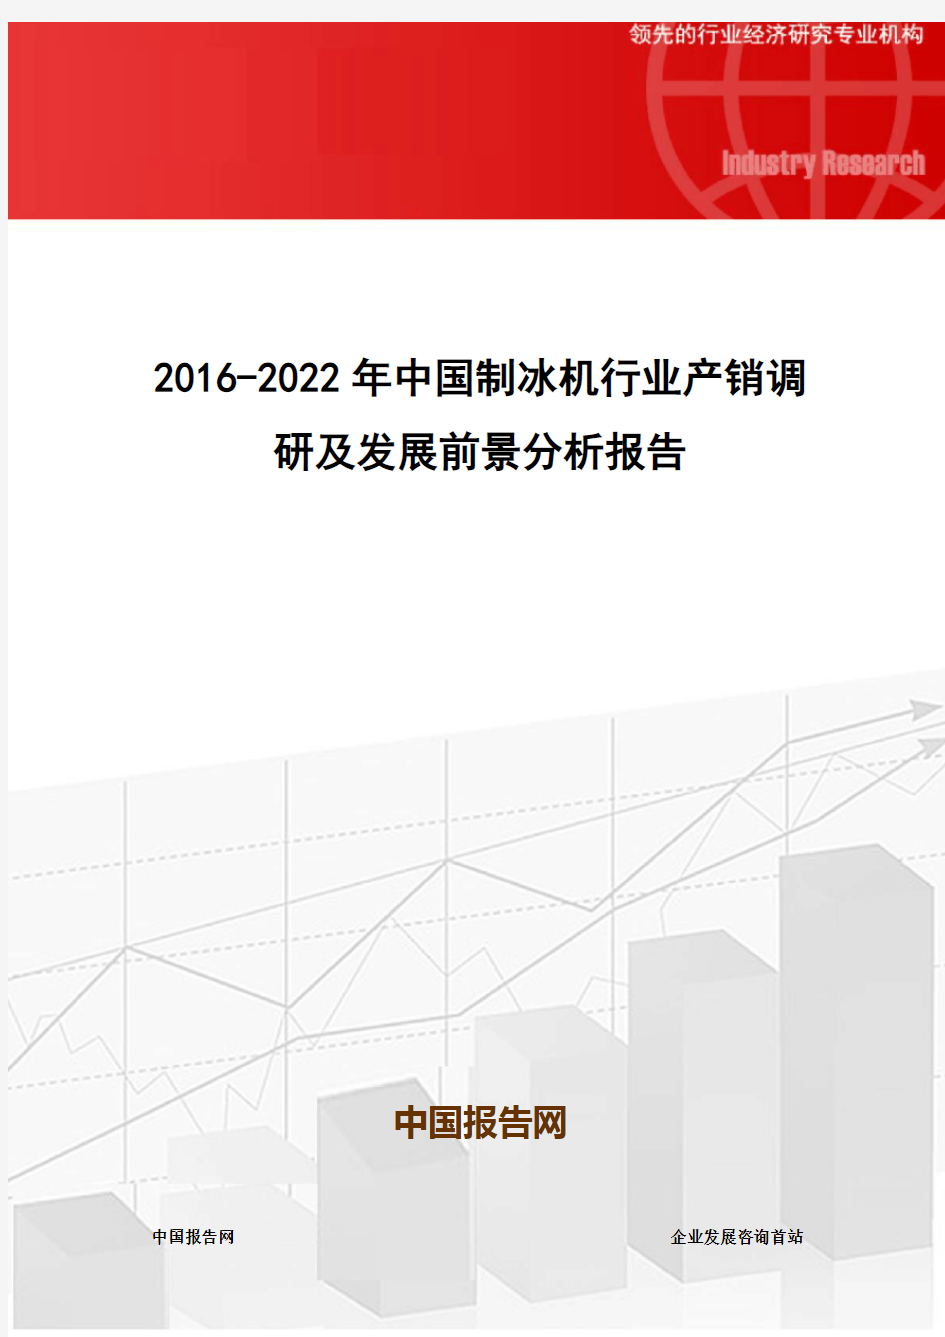 2016-2022年中国制冰机行业产销调研及发展前景分析报告